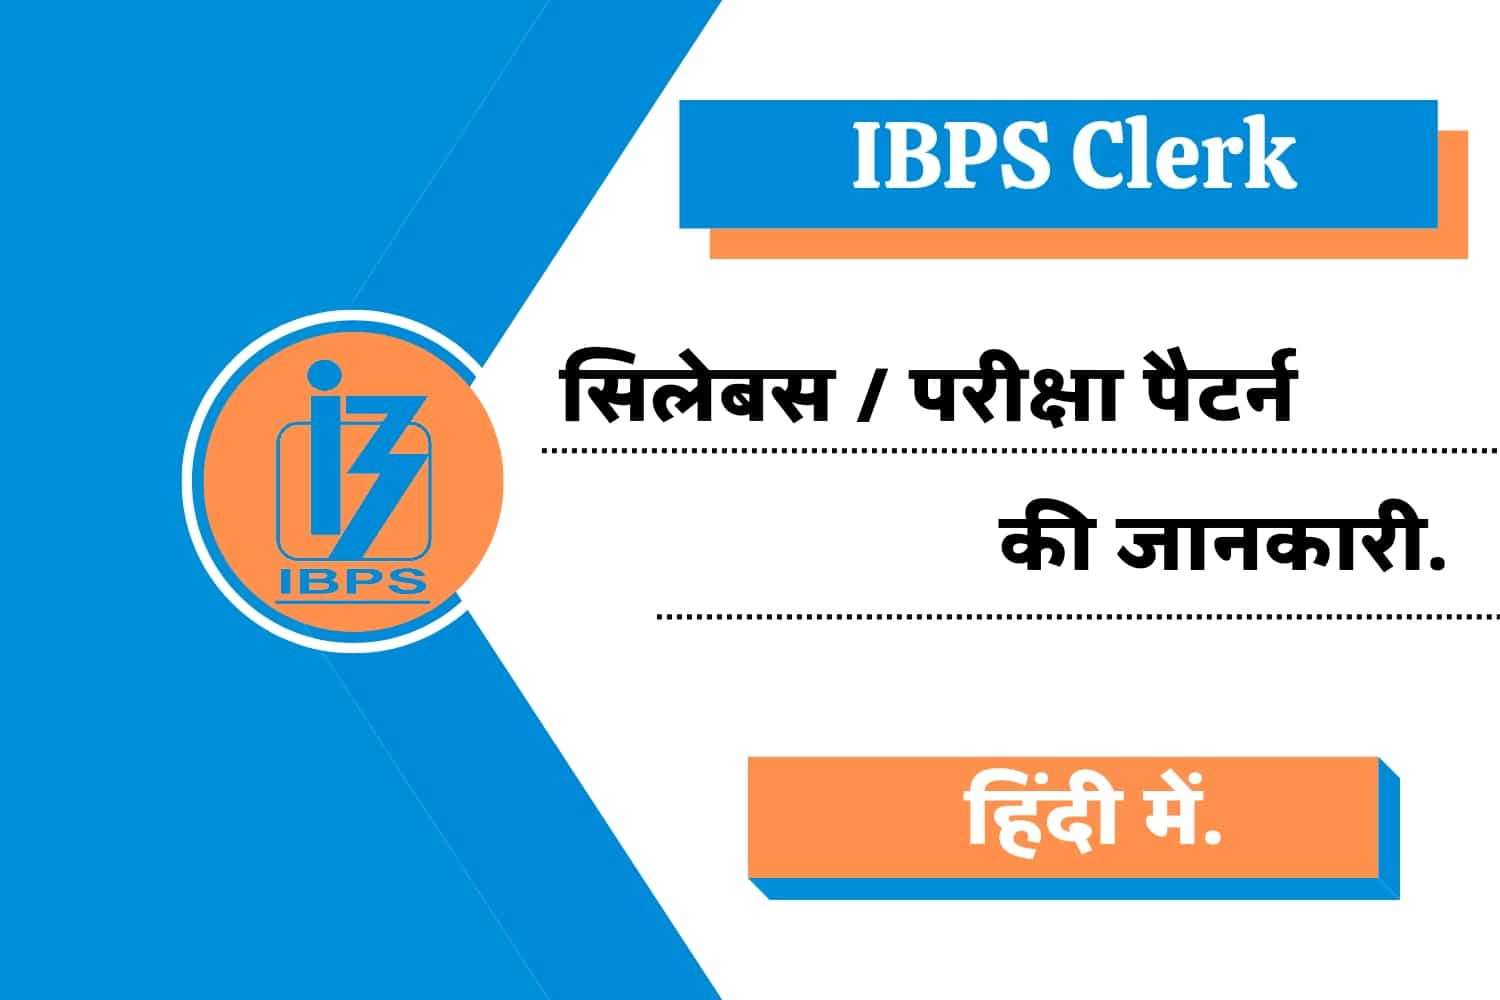 IBPS Clerk Syllabus In Hindi | IBPS क्लर्क सिलेबस हिंदी में